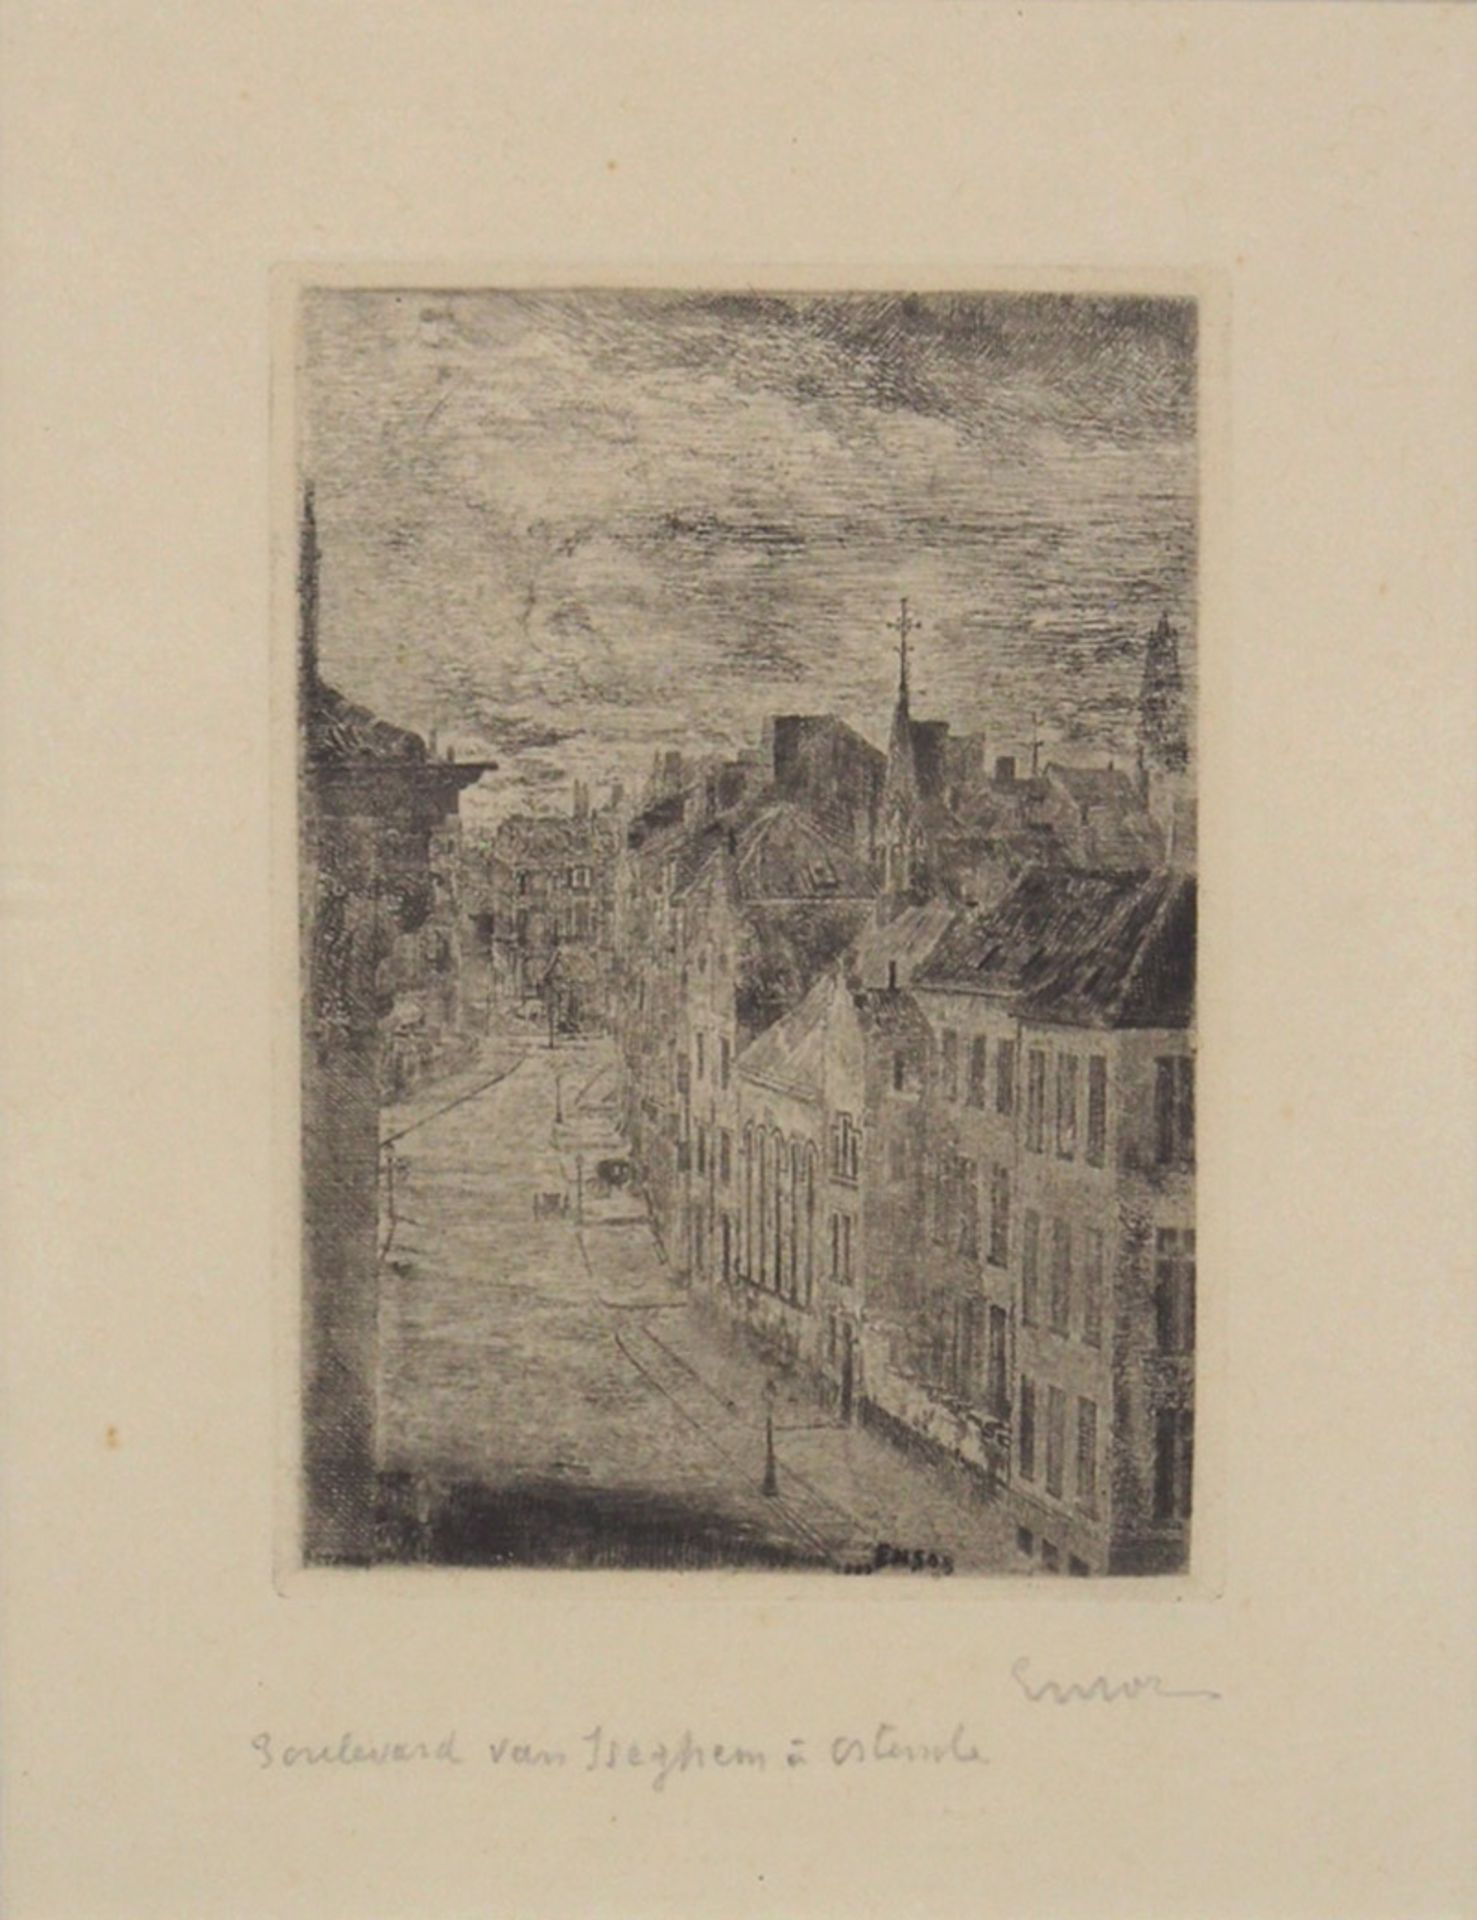 ENSOR, James1860-1949Boulevard von IseghemRadierung, signiert unten rechts, 20 x 15 cm, gerahmt